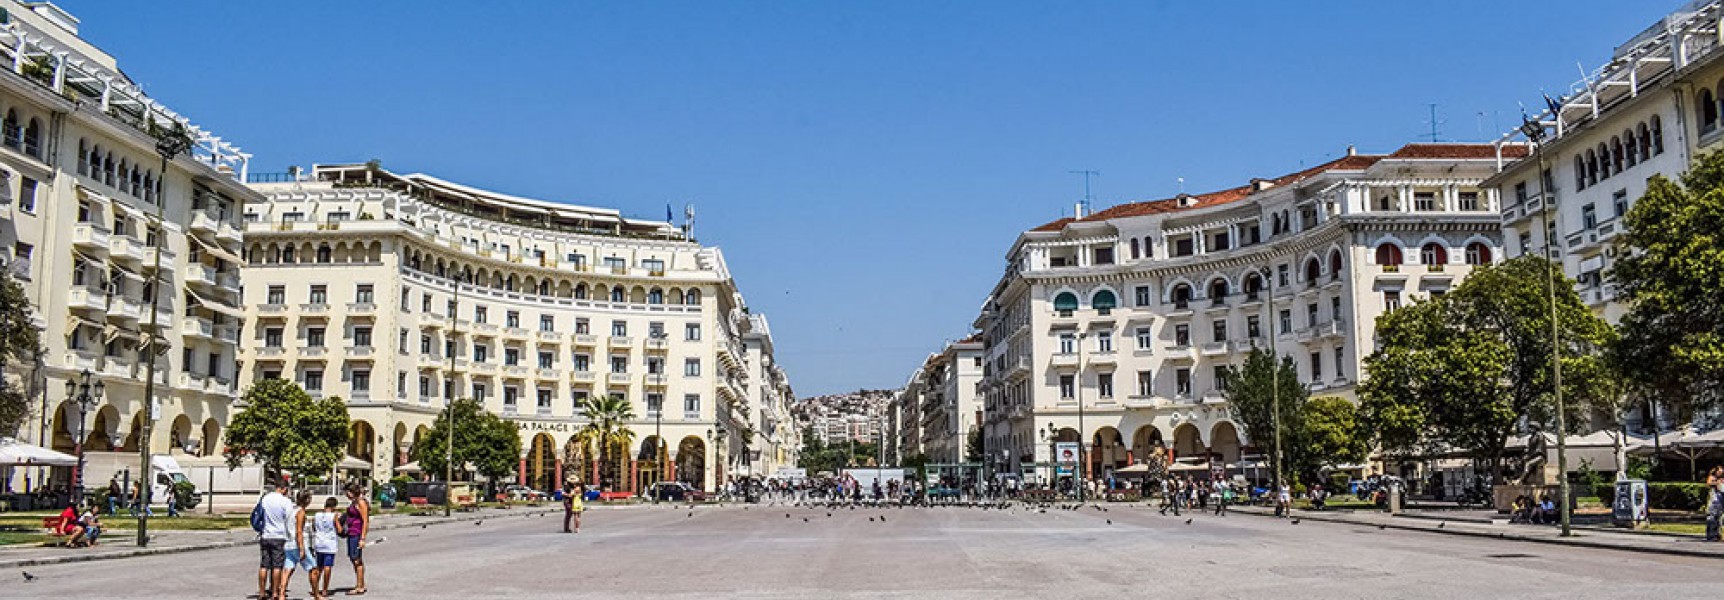 Θεσσαλονίκη, πλατεία Αριτοτέλους